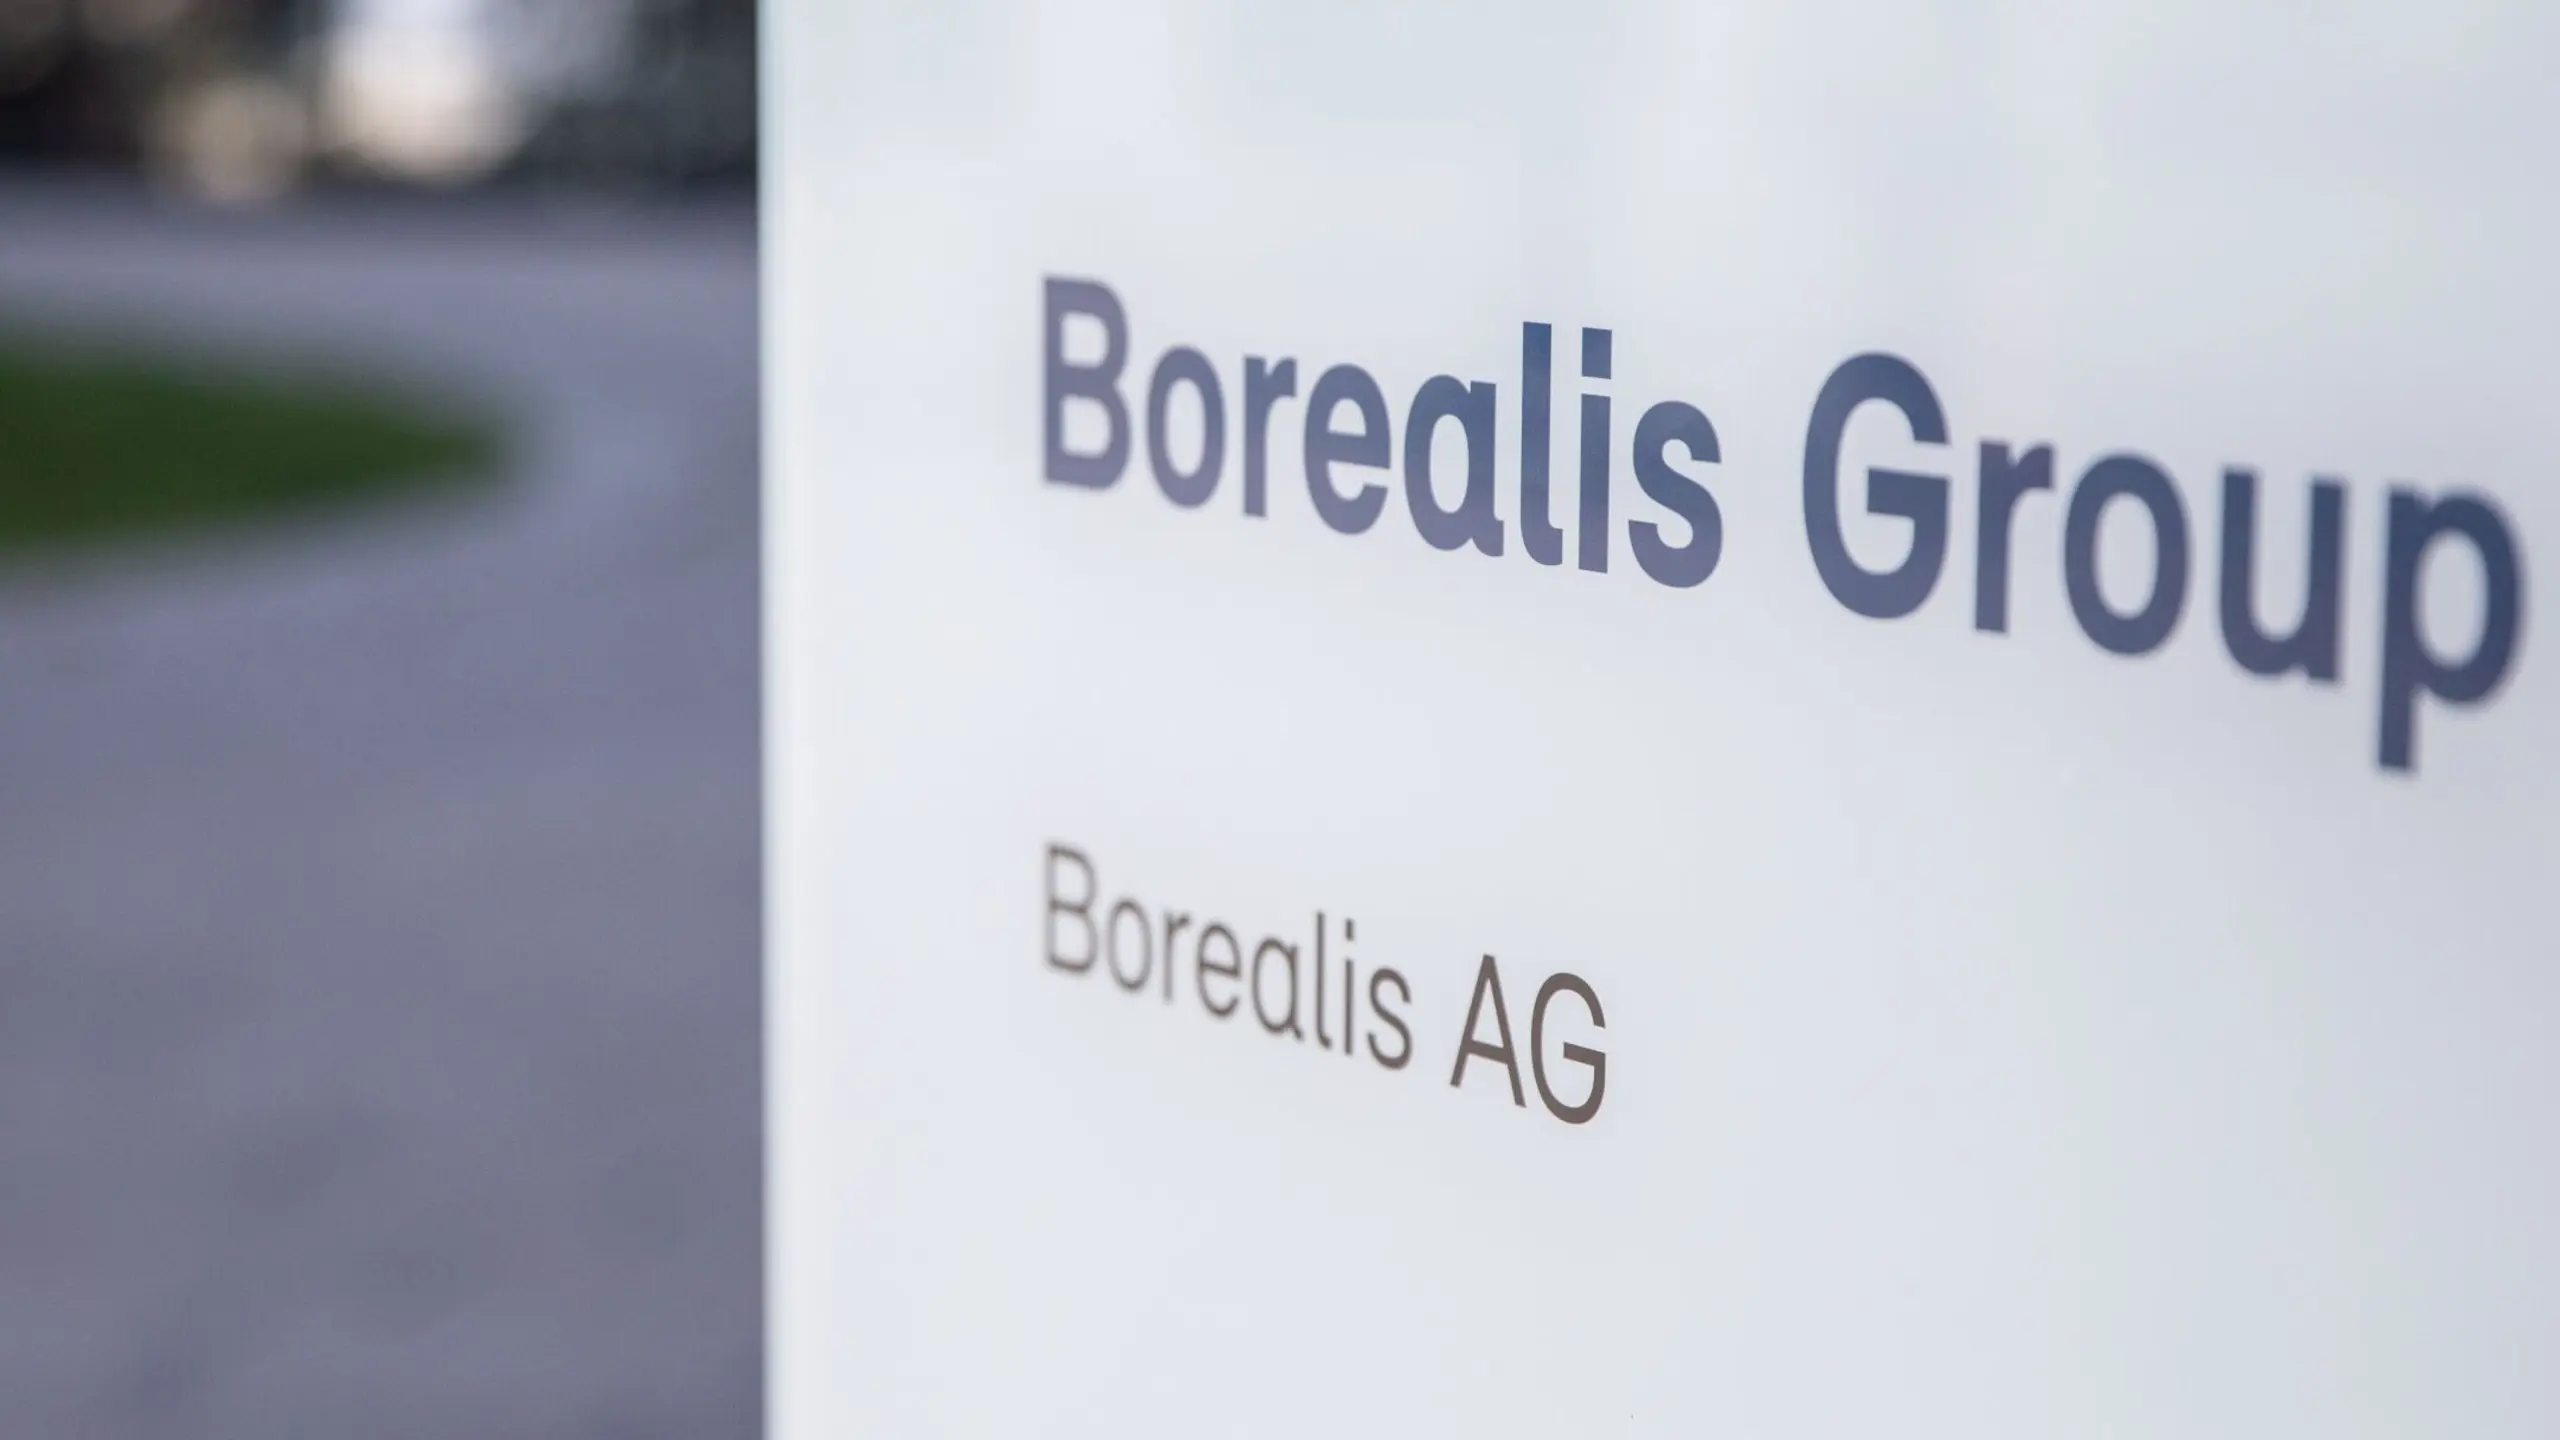 Das zur OMV gehörende Chemieunternehmen Borealis liegt auf Rang 7 der umsatzstärksten Unternehmen Österreichs.